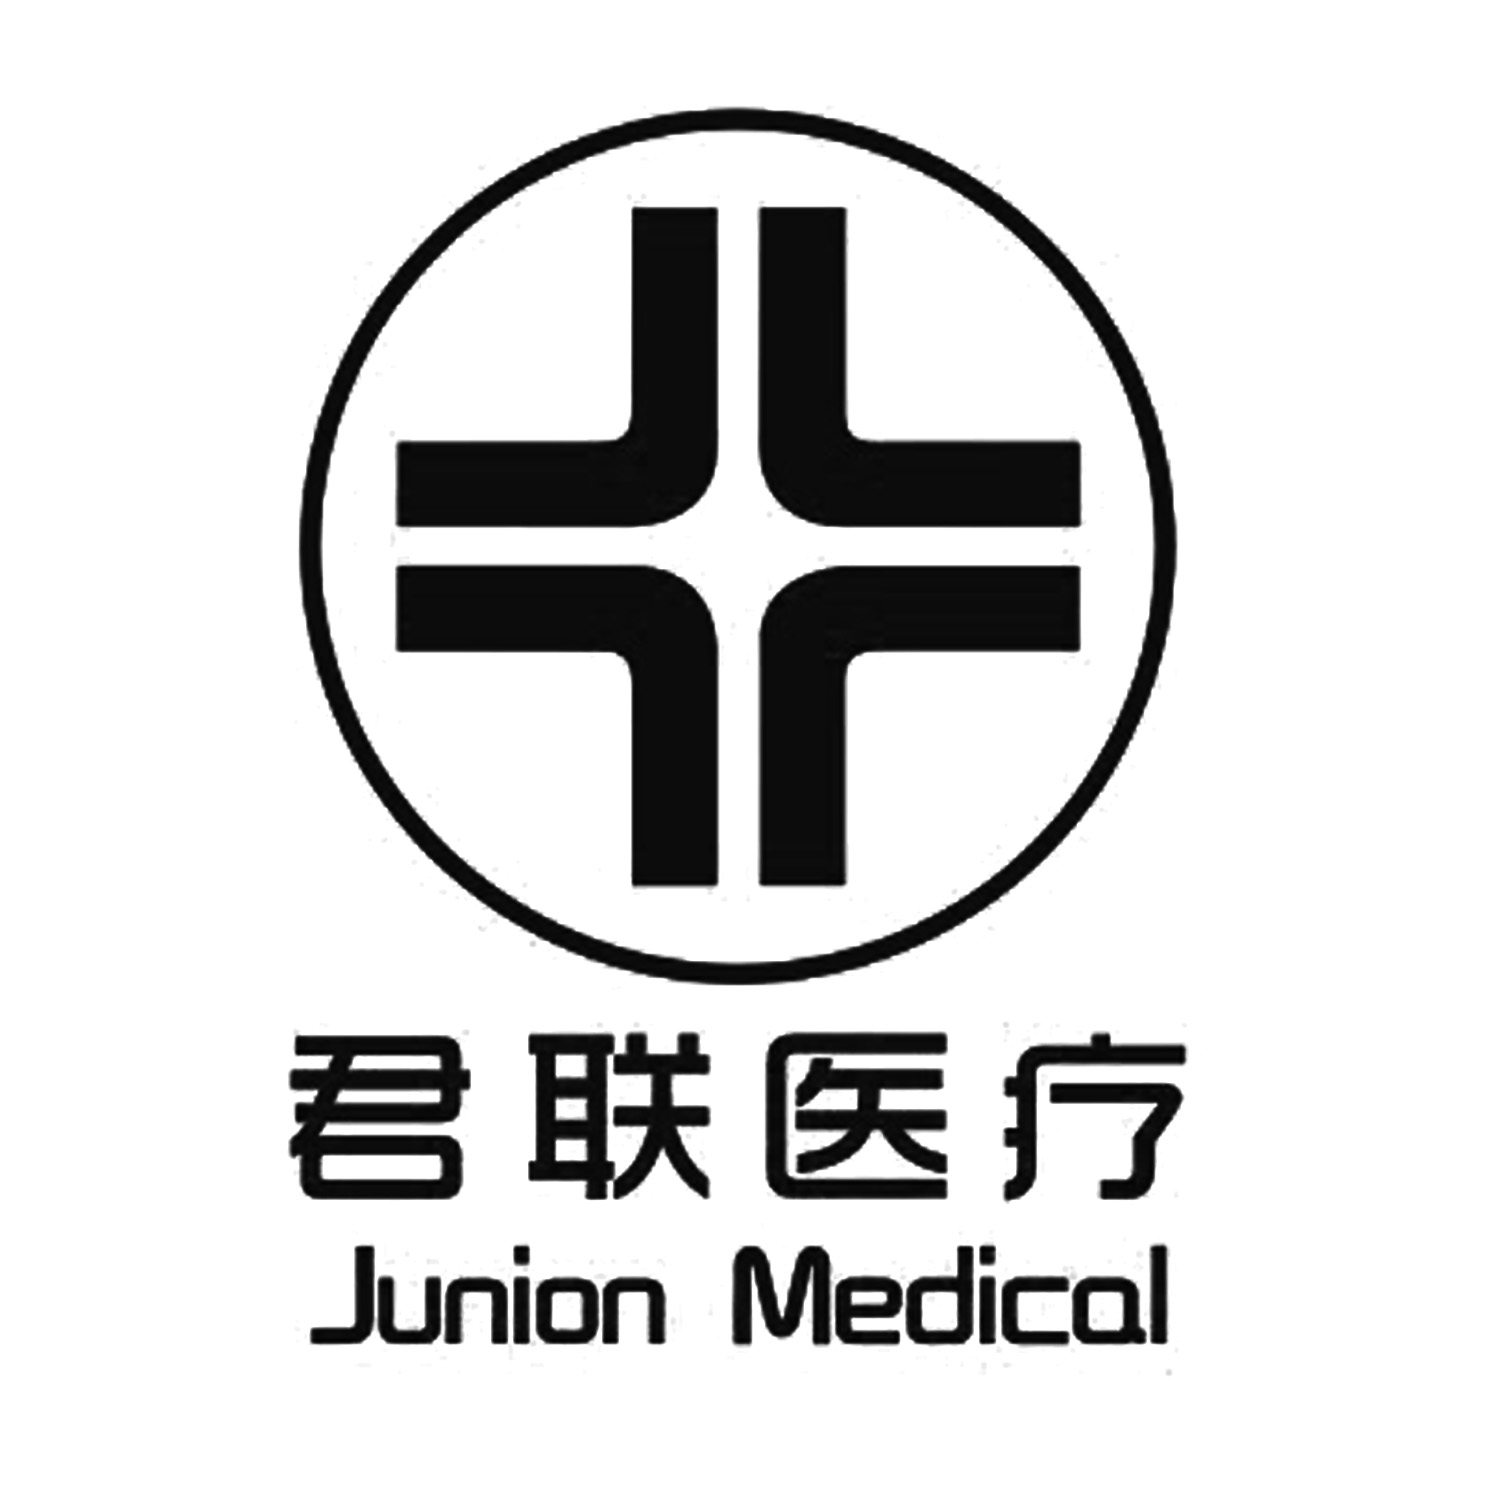 君联医疗 junion medical